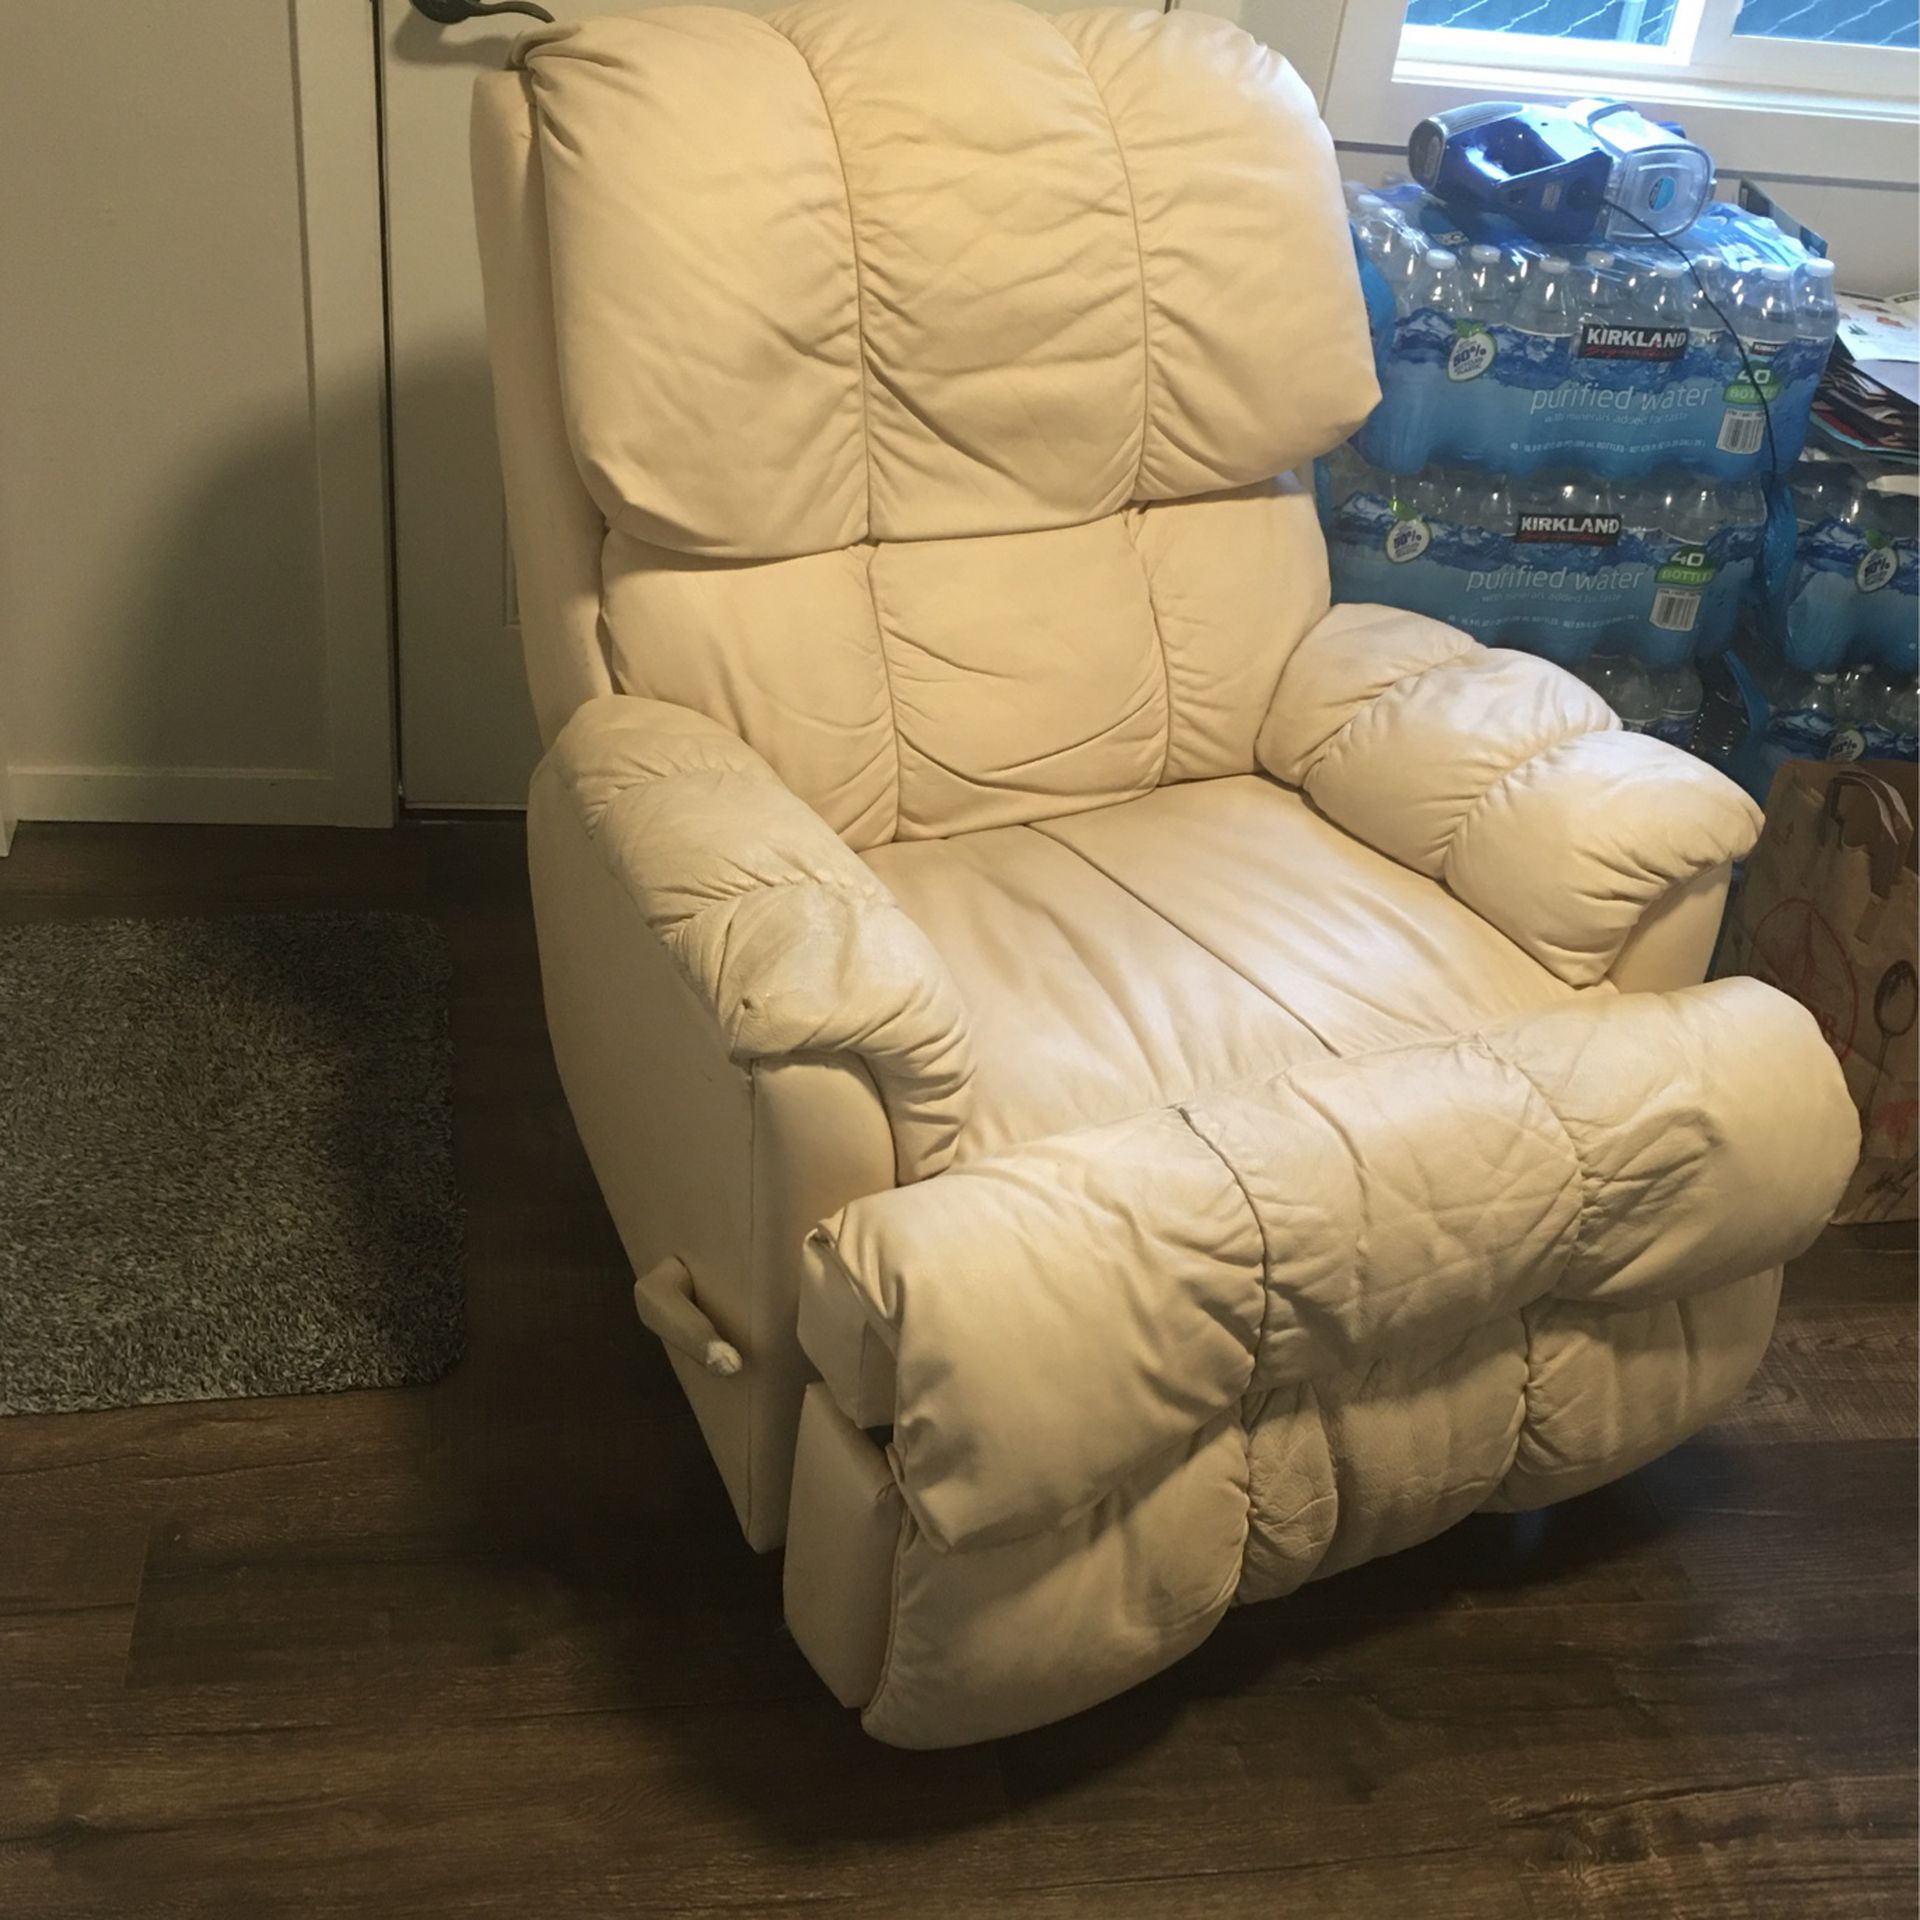 Chair Recliner 